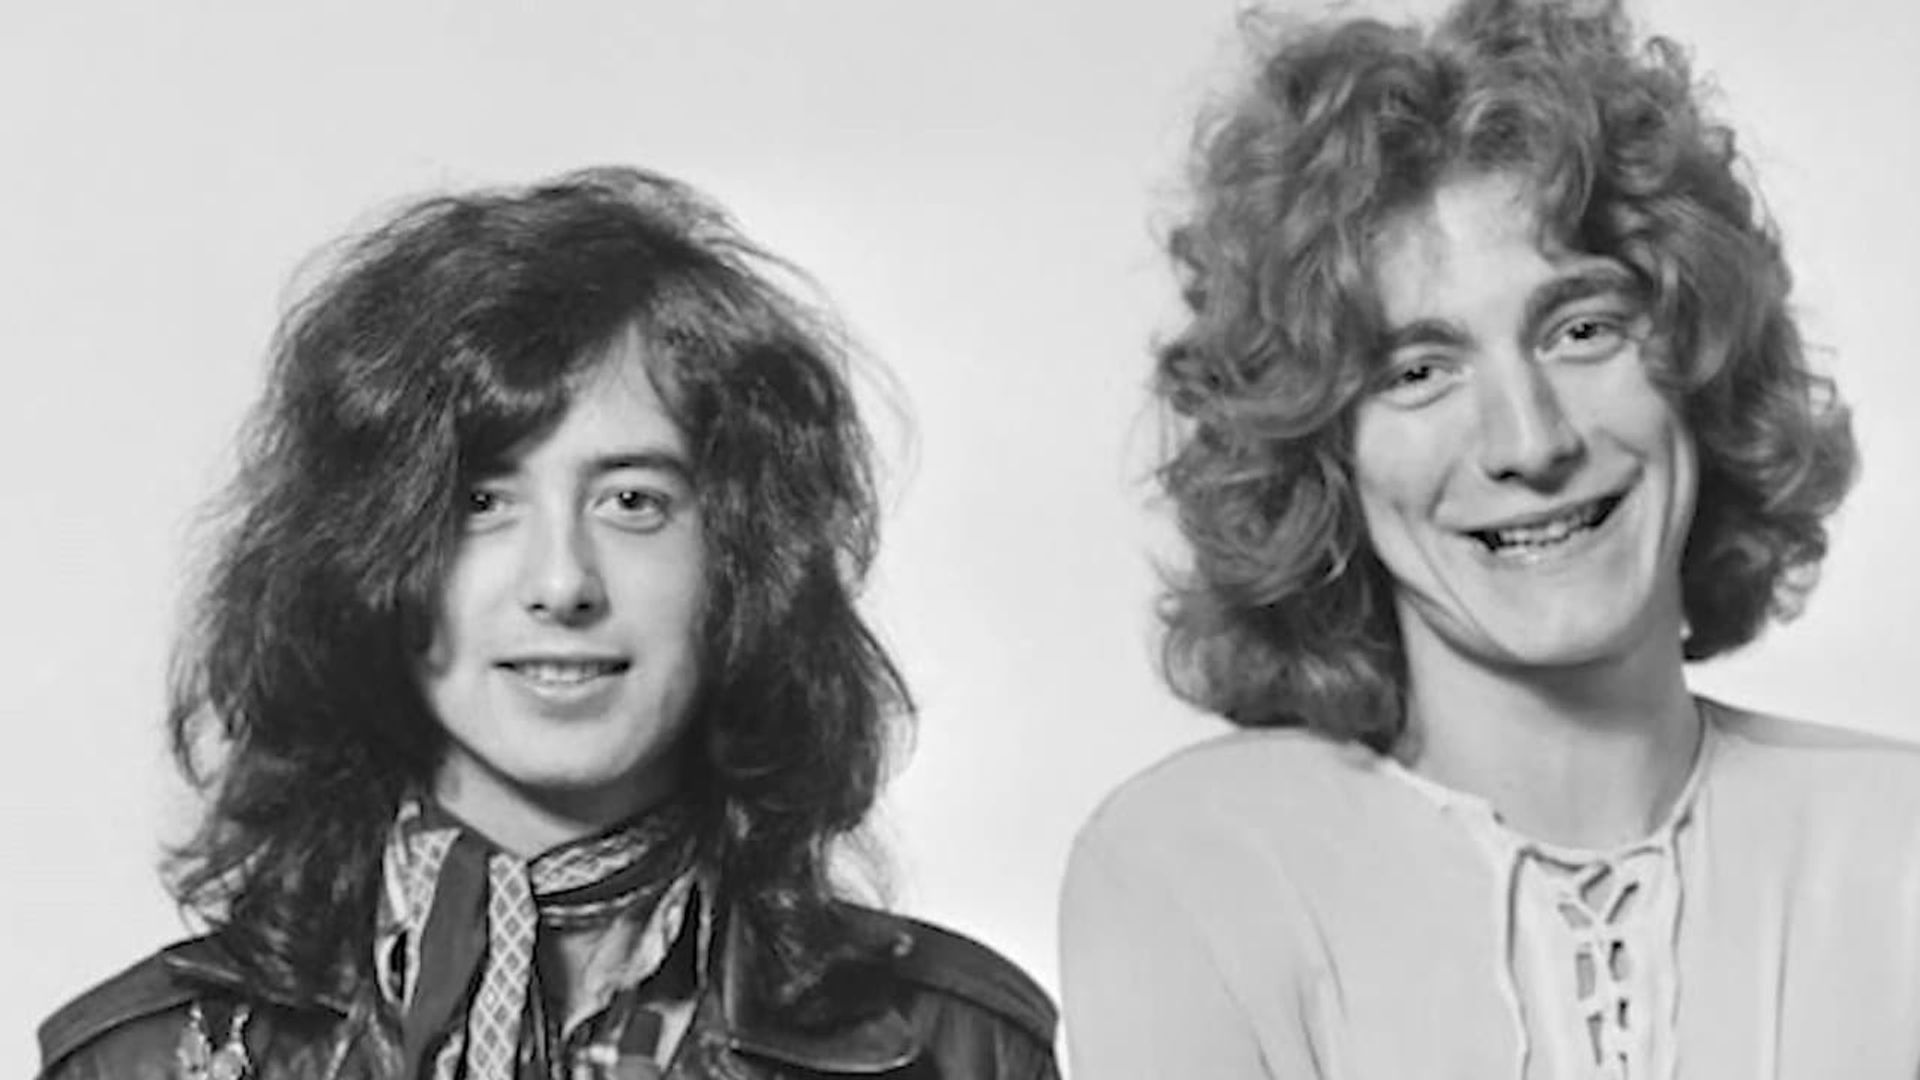 Led Zeppelin: Whole Lotta Rock background